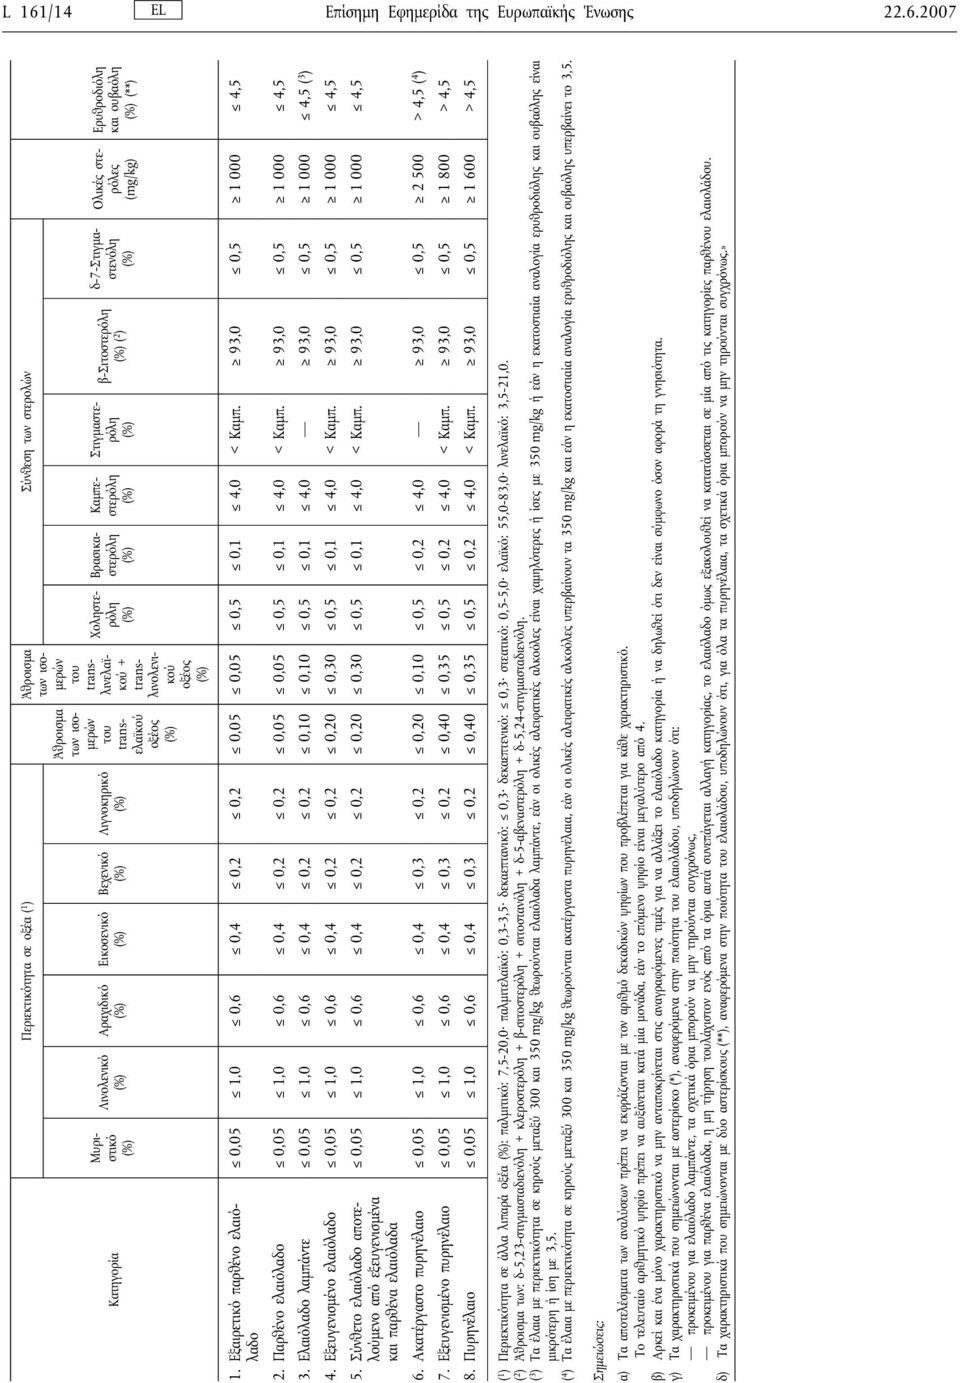 στερόλες (mg/kg) Ερυθροδιόλη και ουβαόλη (**) 1. Εξαιρετικό παρθένο ελαιόλαδο 0,05 1,0 0,6 0,4 0,2 0,2 0,05 0,05 0,5 0,1 4,0 < Καμπ. 93,0 0,5 1 000 4,5 2.